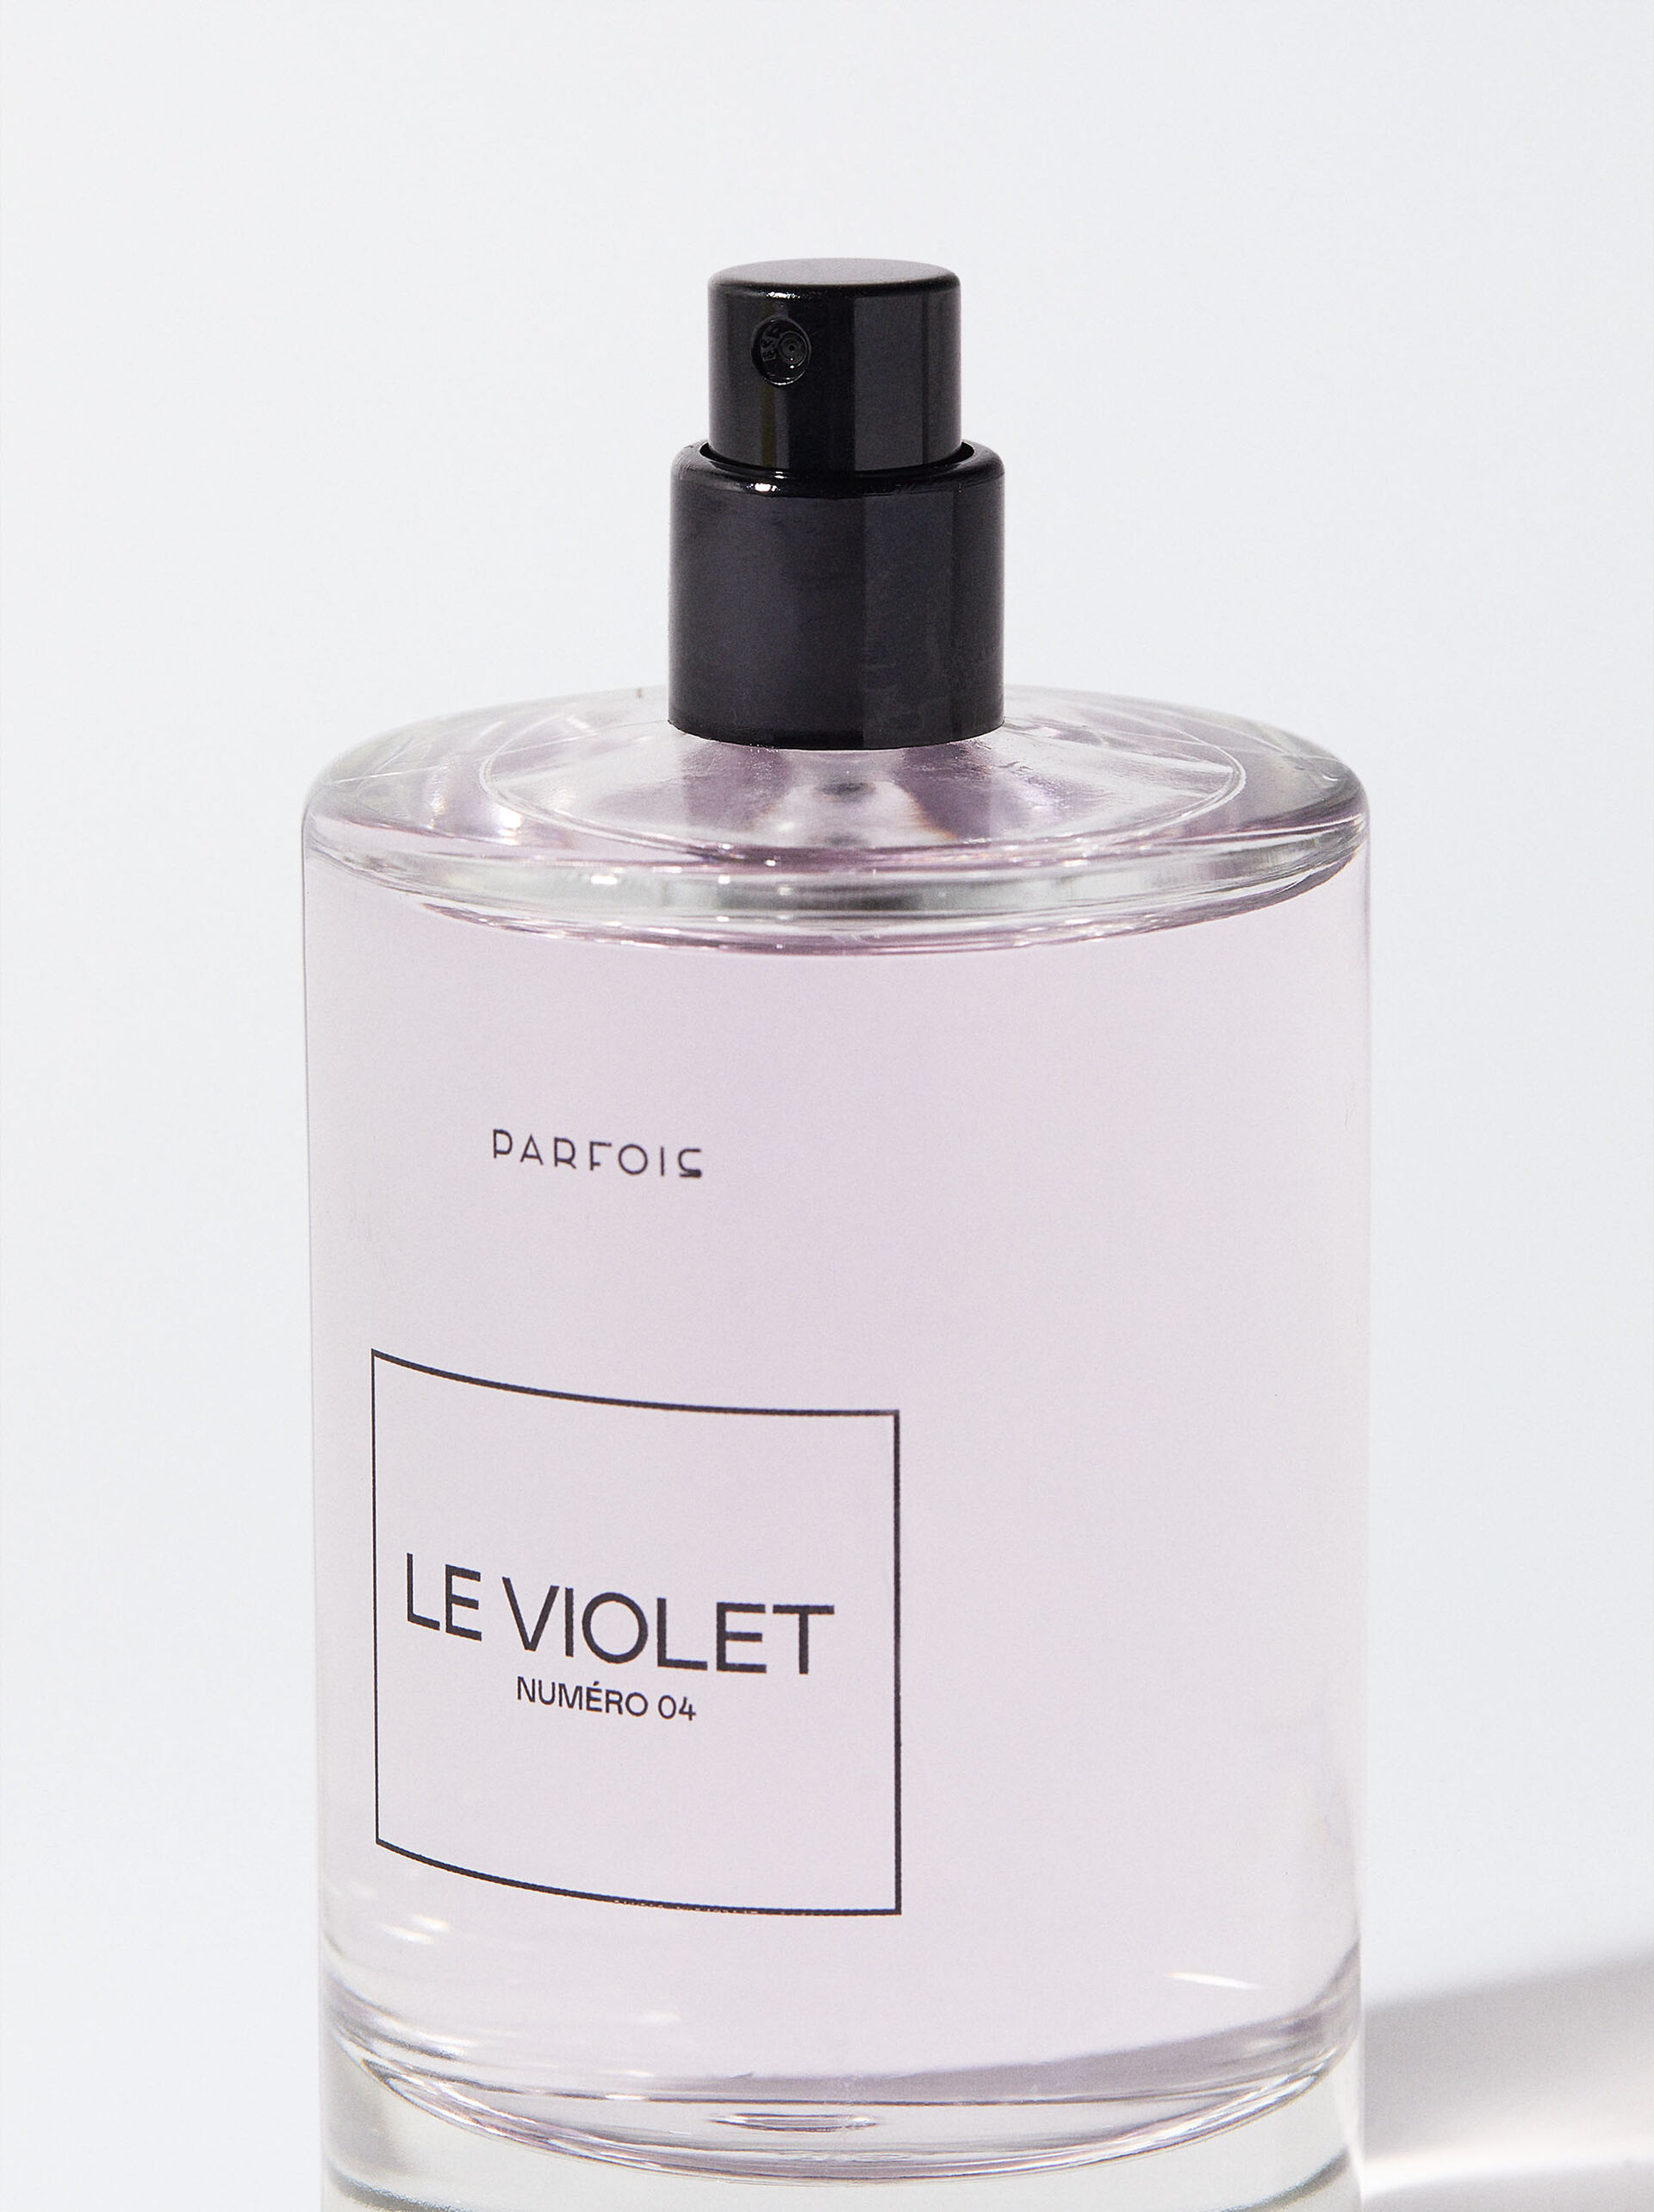 Le Numéro 03 Perfume - Le Vert - 100ml image number 3.0